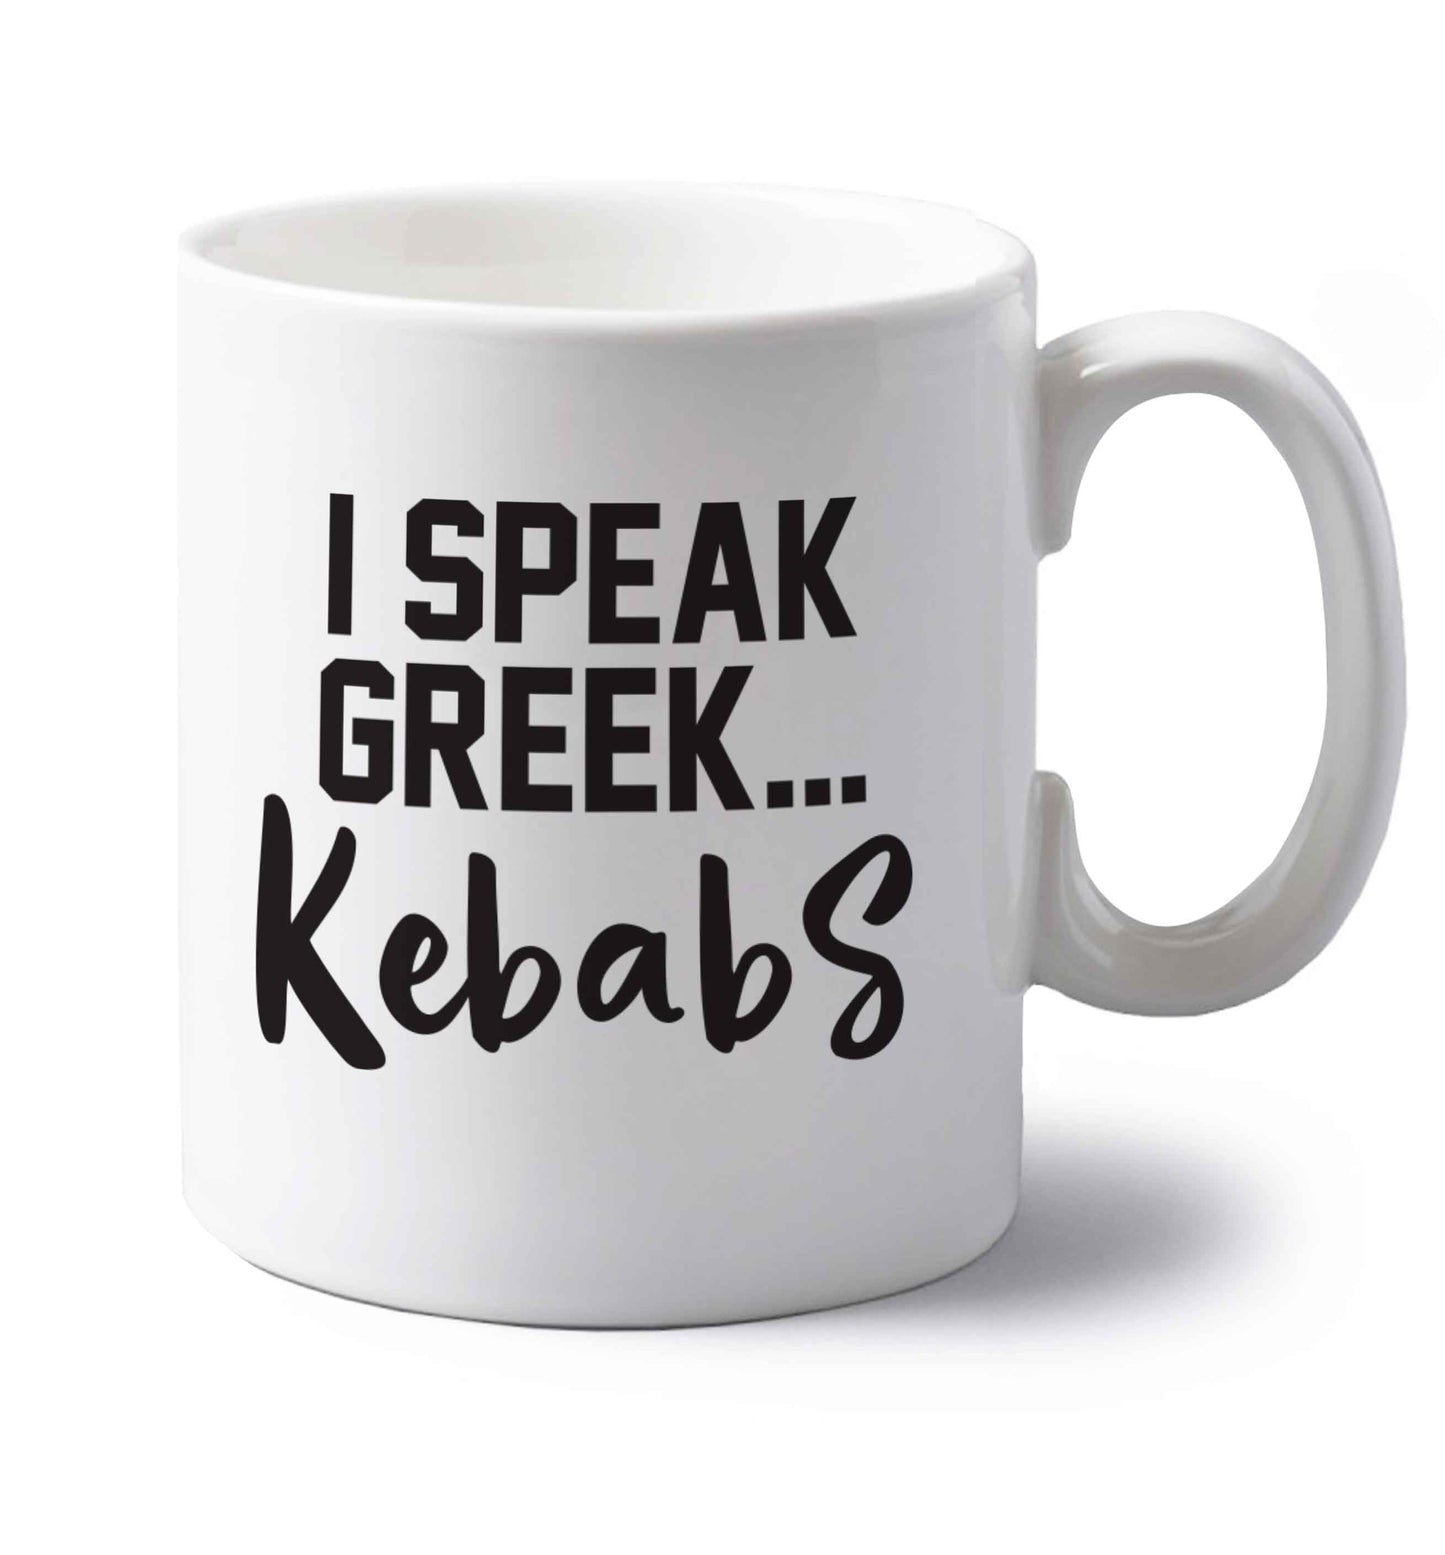 I speak Greek...kebabs left handed white ceramic mug 